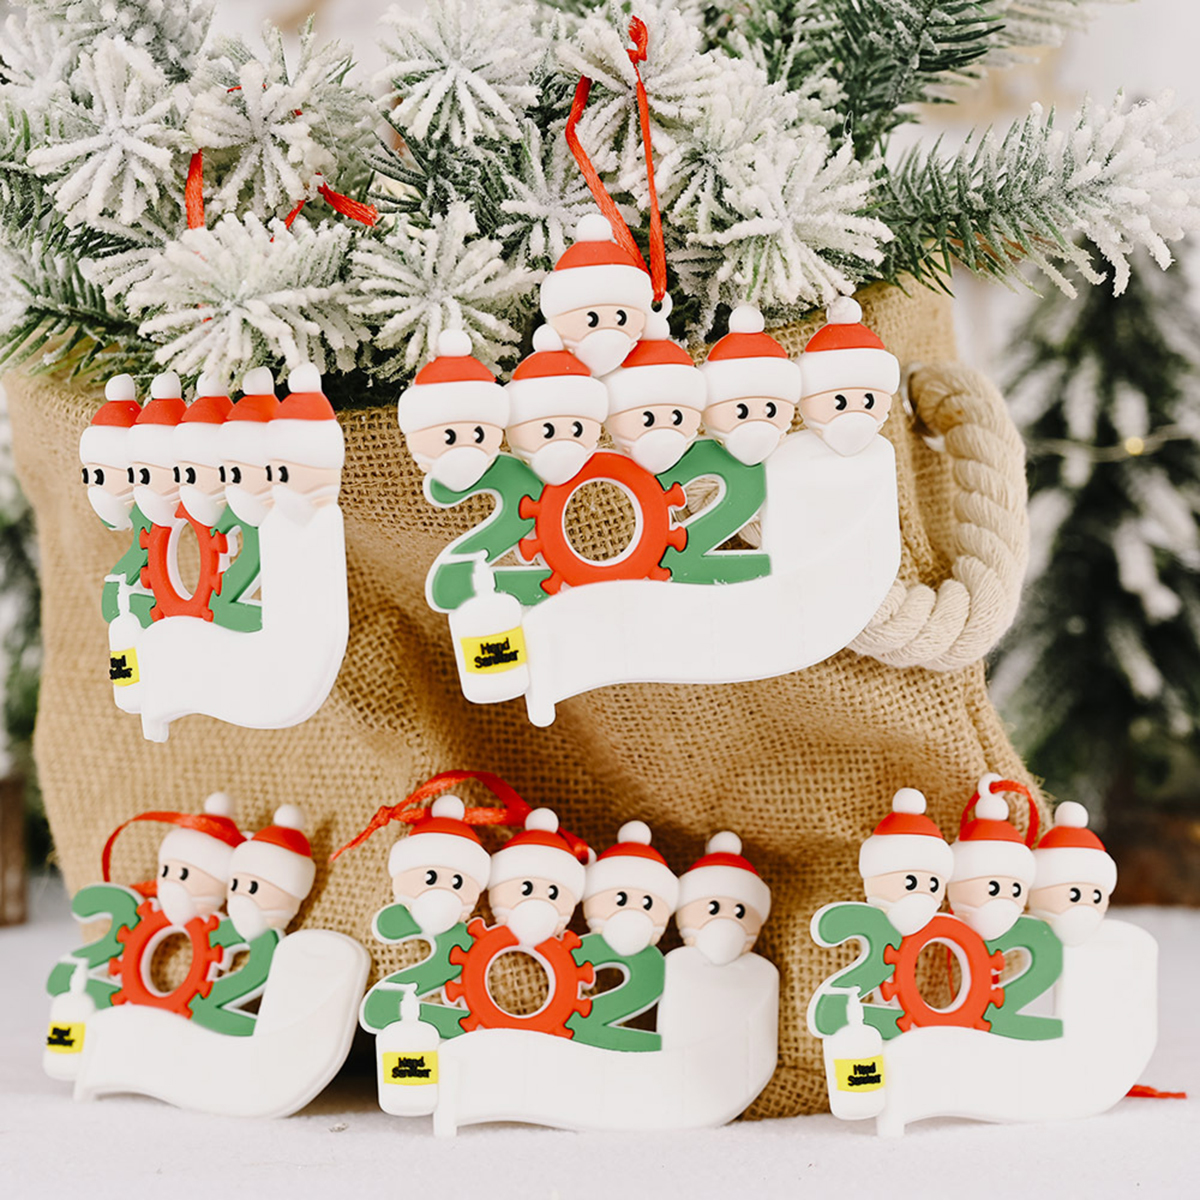 Mask-Santa-Snowman-Ornament-DIY-Name-Greetings-Christmas-Tree-Ornament-for-Christmas-Tree-Decoration-1786417-10